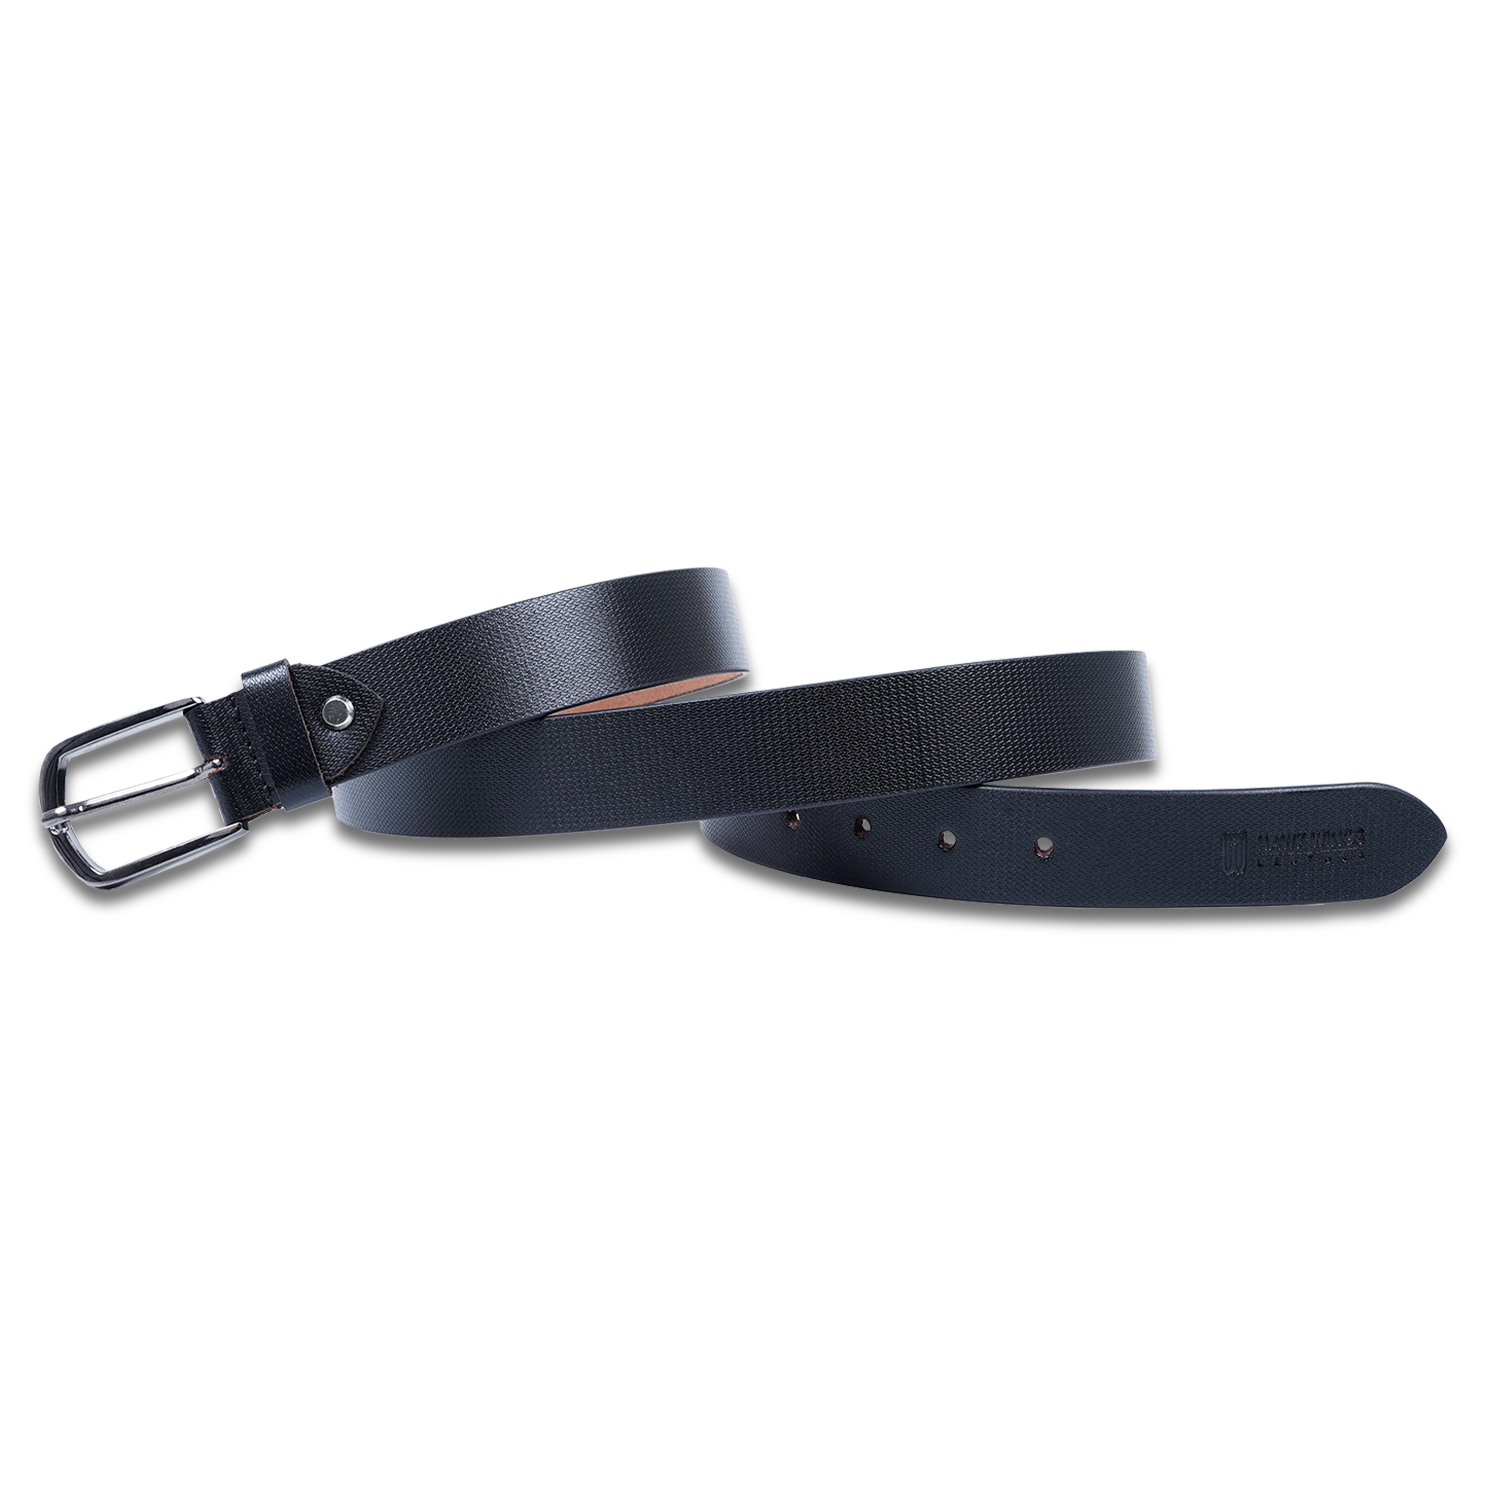  Genuine Leather belt |Formal Belt | Black-asset-268